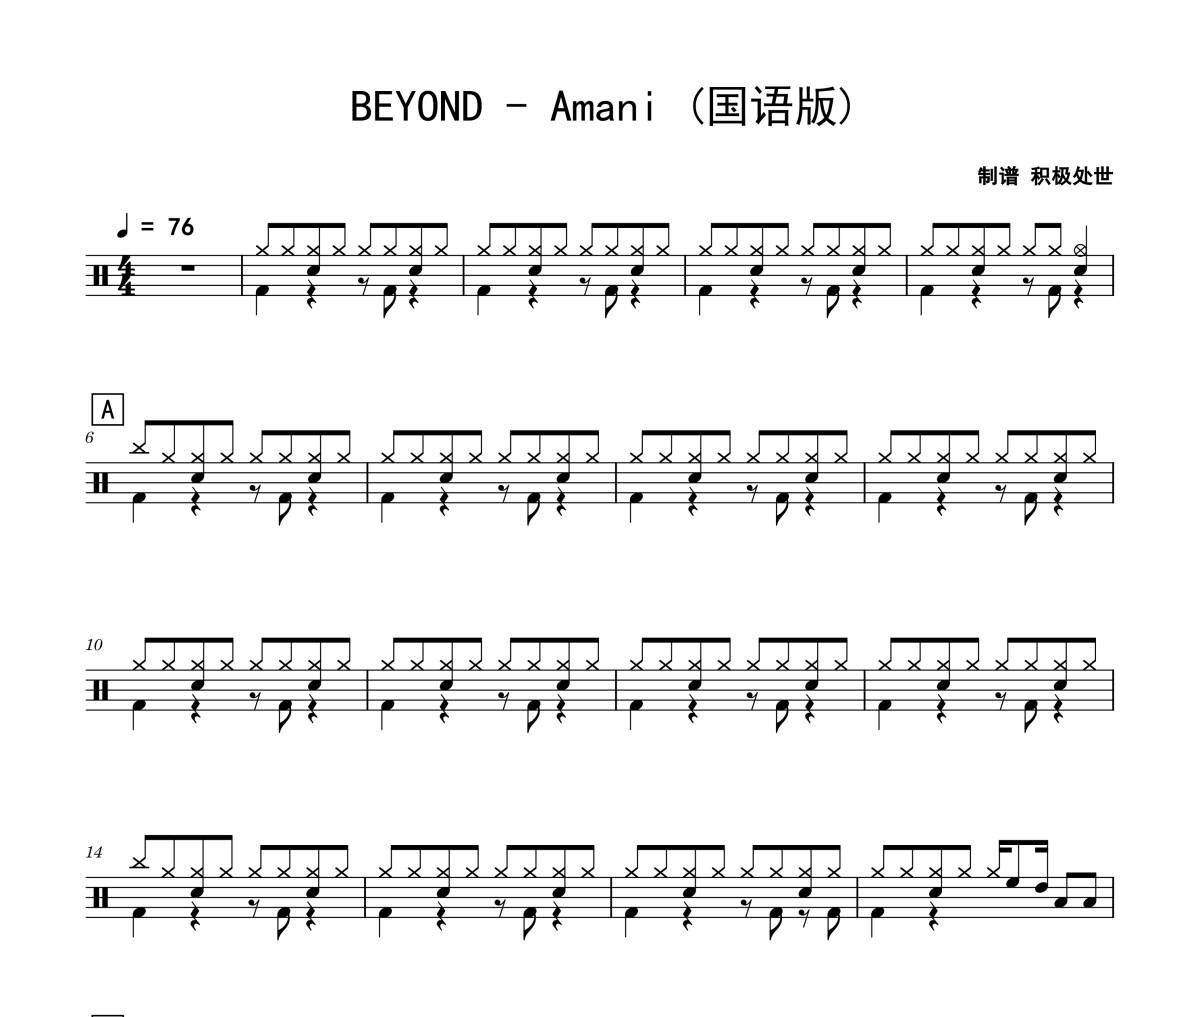 Amani 鼓谱 BEYOND-Amani (国语版)架子鼓|爵士鼓|鼓谱